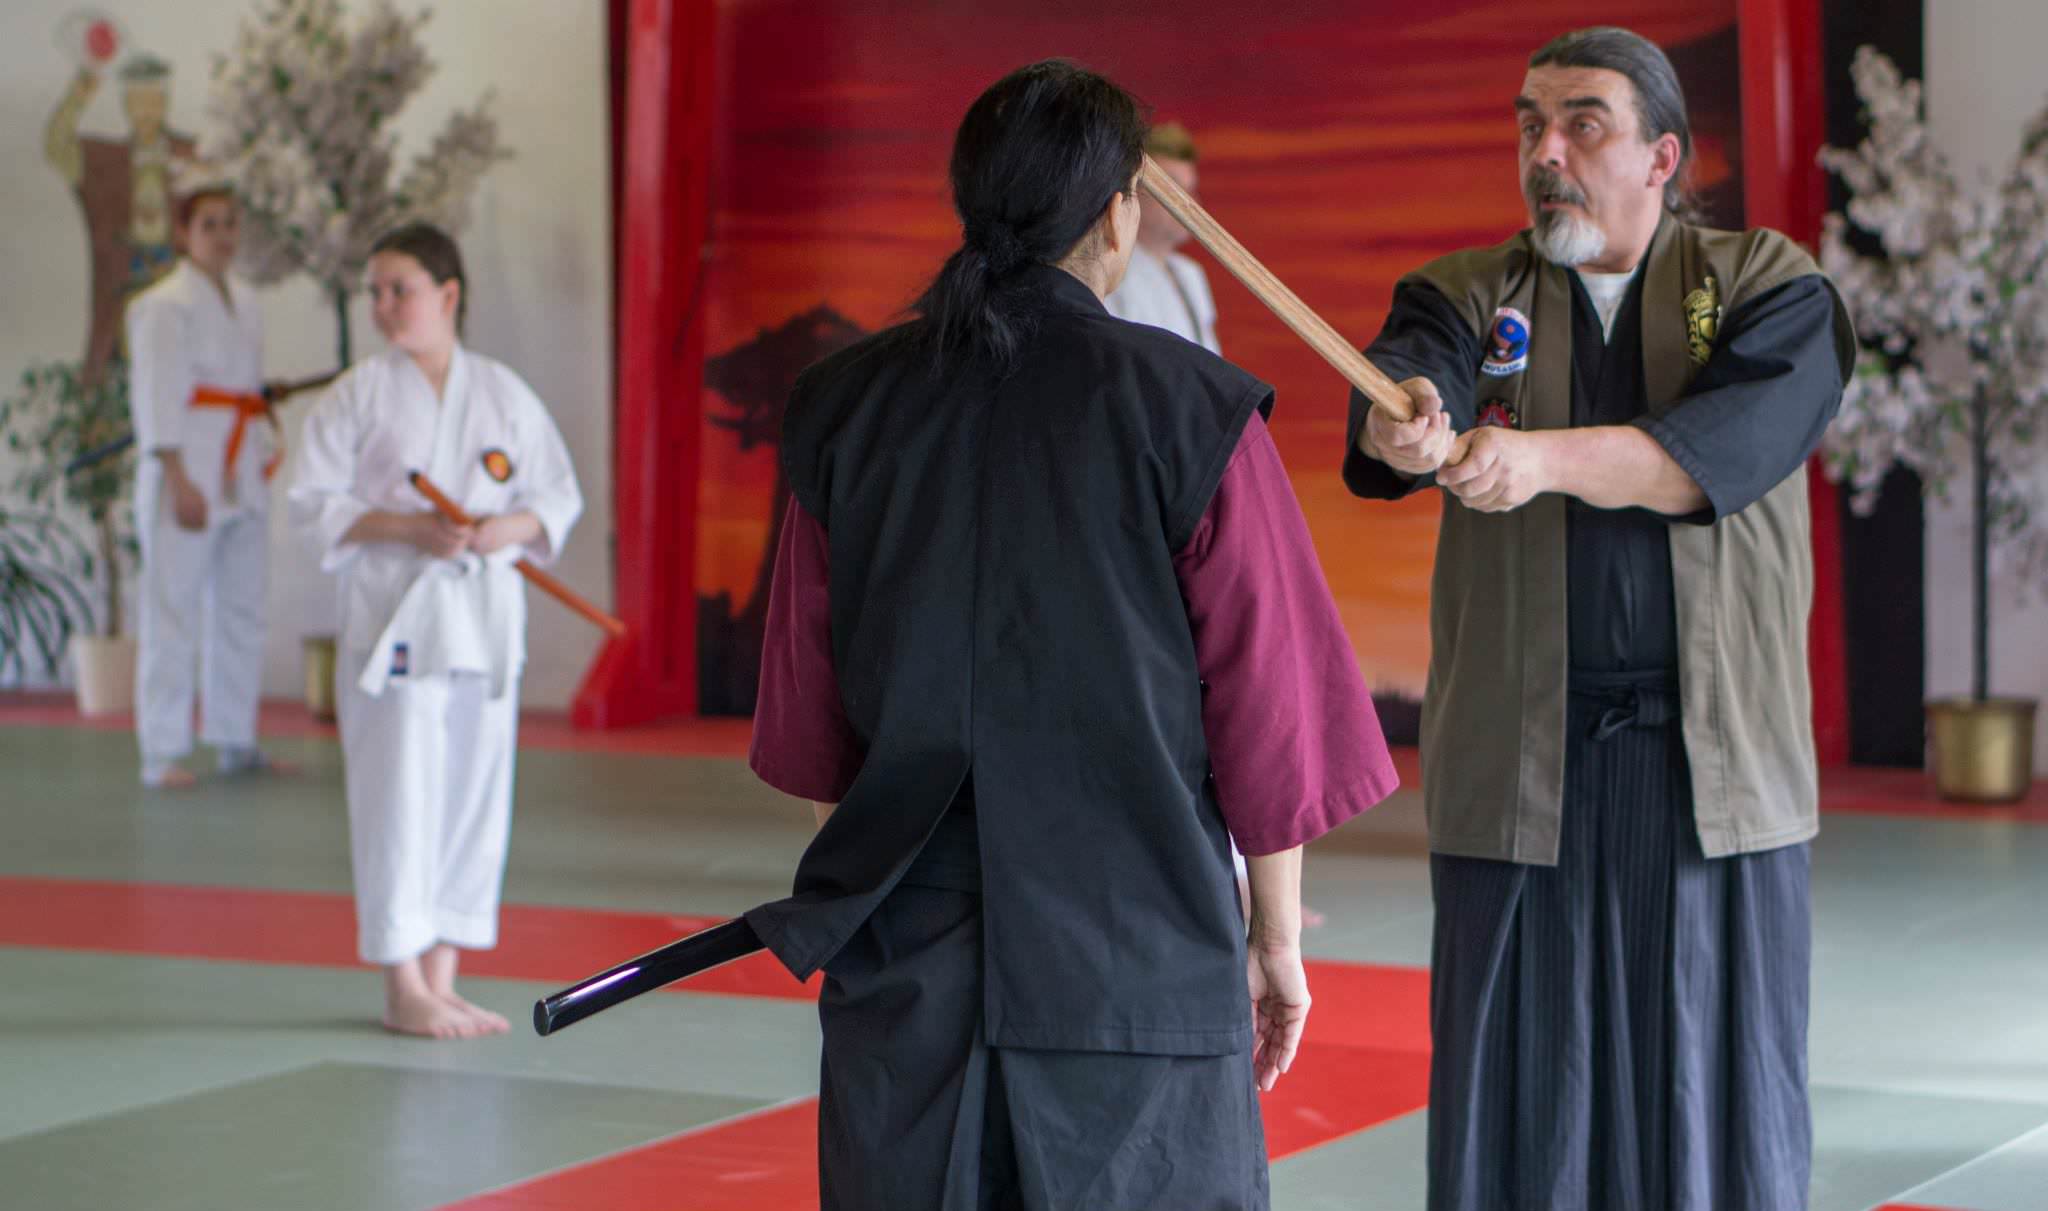 Days Of the Sword Seminar Gohshinkan Ryu Dojo traditionelle Kampfkunst, Schwertkunst und Selbstverteidigung Impressionen aus dem Training